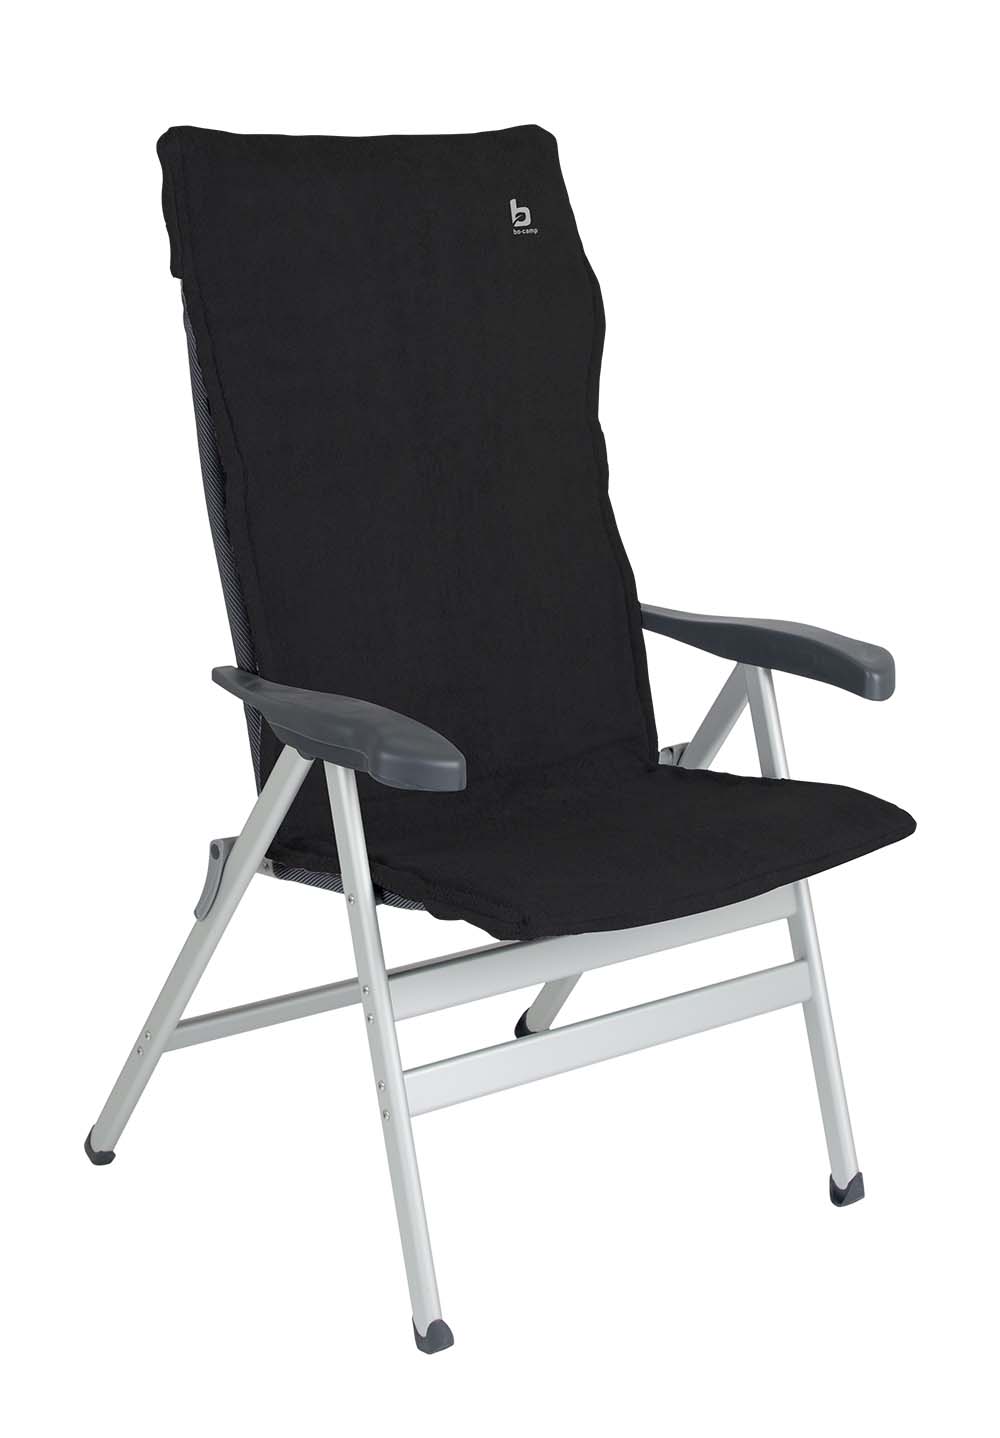 1849281 Een extra zachte stoelhoes voor (kampeer)stoelen. Deze universele hoes zorgt voor optimaal zitcomfort en biedt bescherming aan de stoel. Extra comfortabel door het gepolsterde badstof. De stoelhoes is universeel toepasbaar.